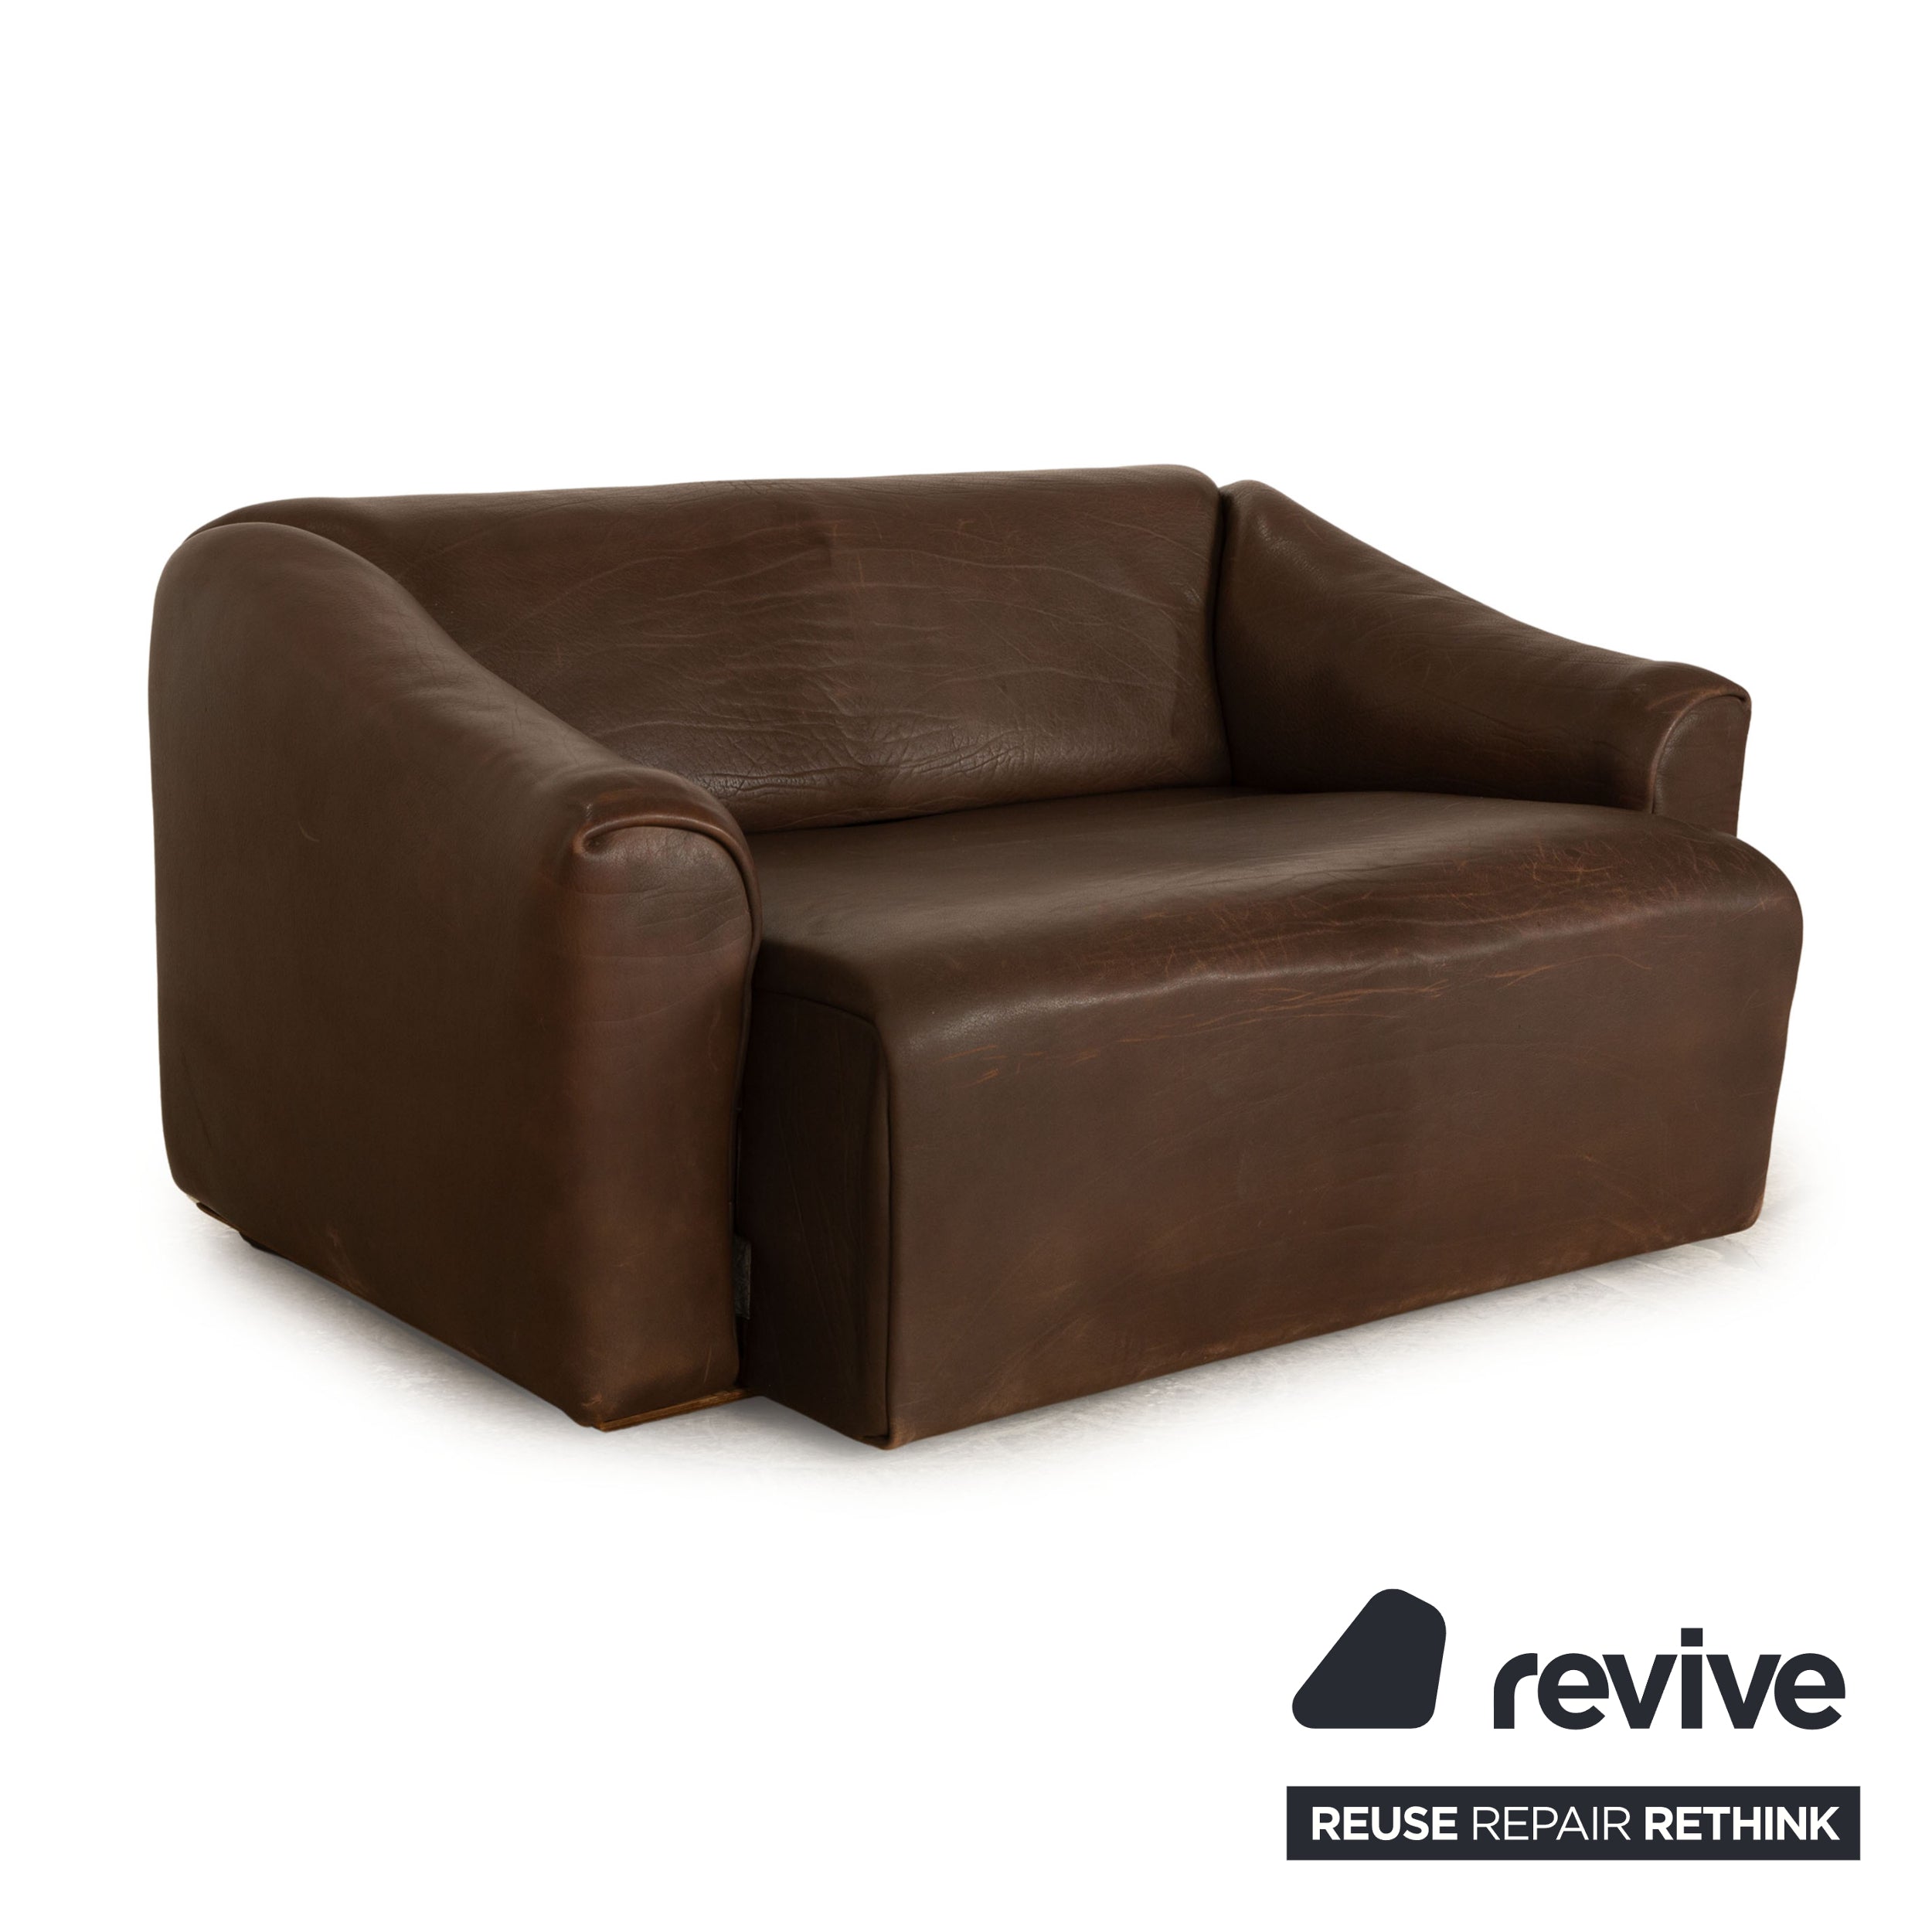 de Sede DS 47 Leder Zweisitzer Braun Sofa Couch manuelle Funktion